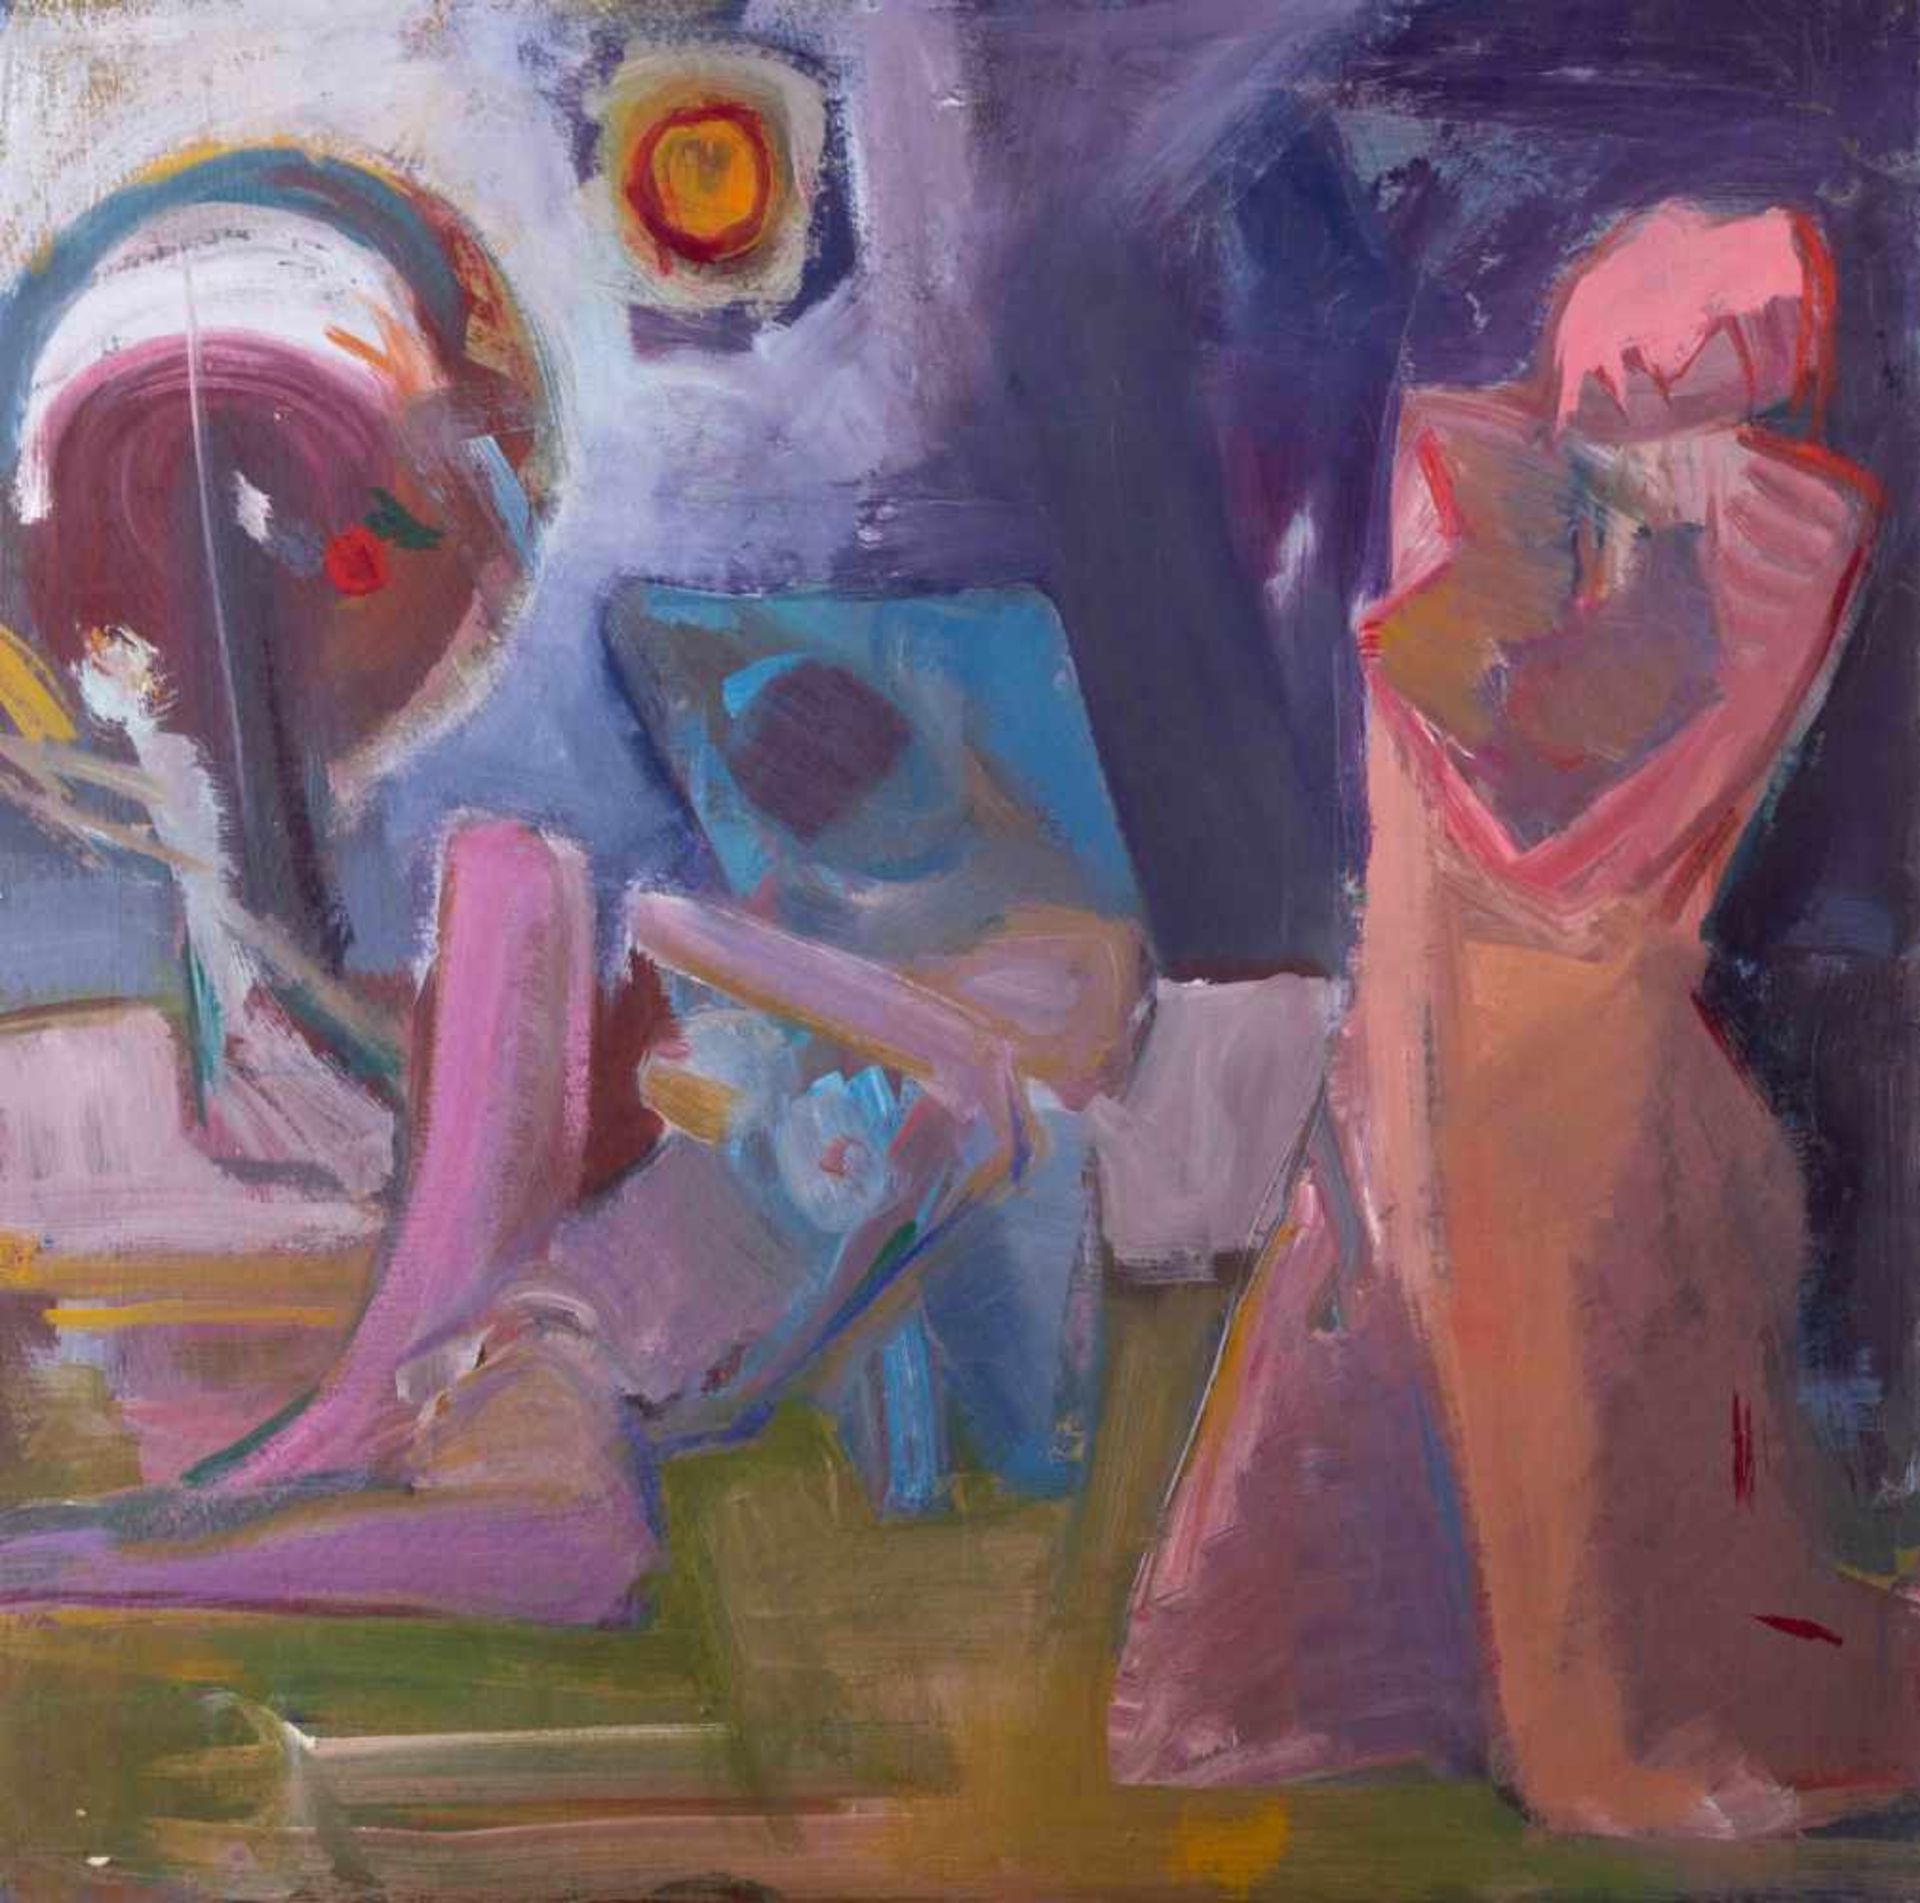 Klaus TOBER (1950-1994) "3 Akte" Gemälde Öl/Karton, 49,7 cm x 49,7 cm, verso Künstlerangabe und